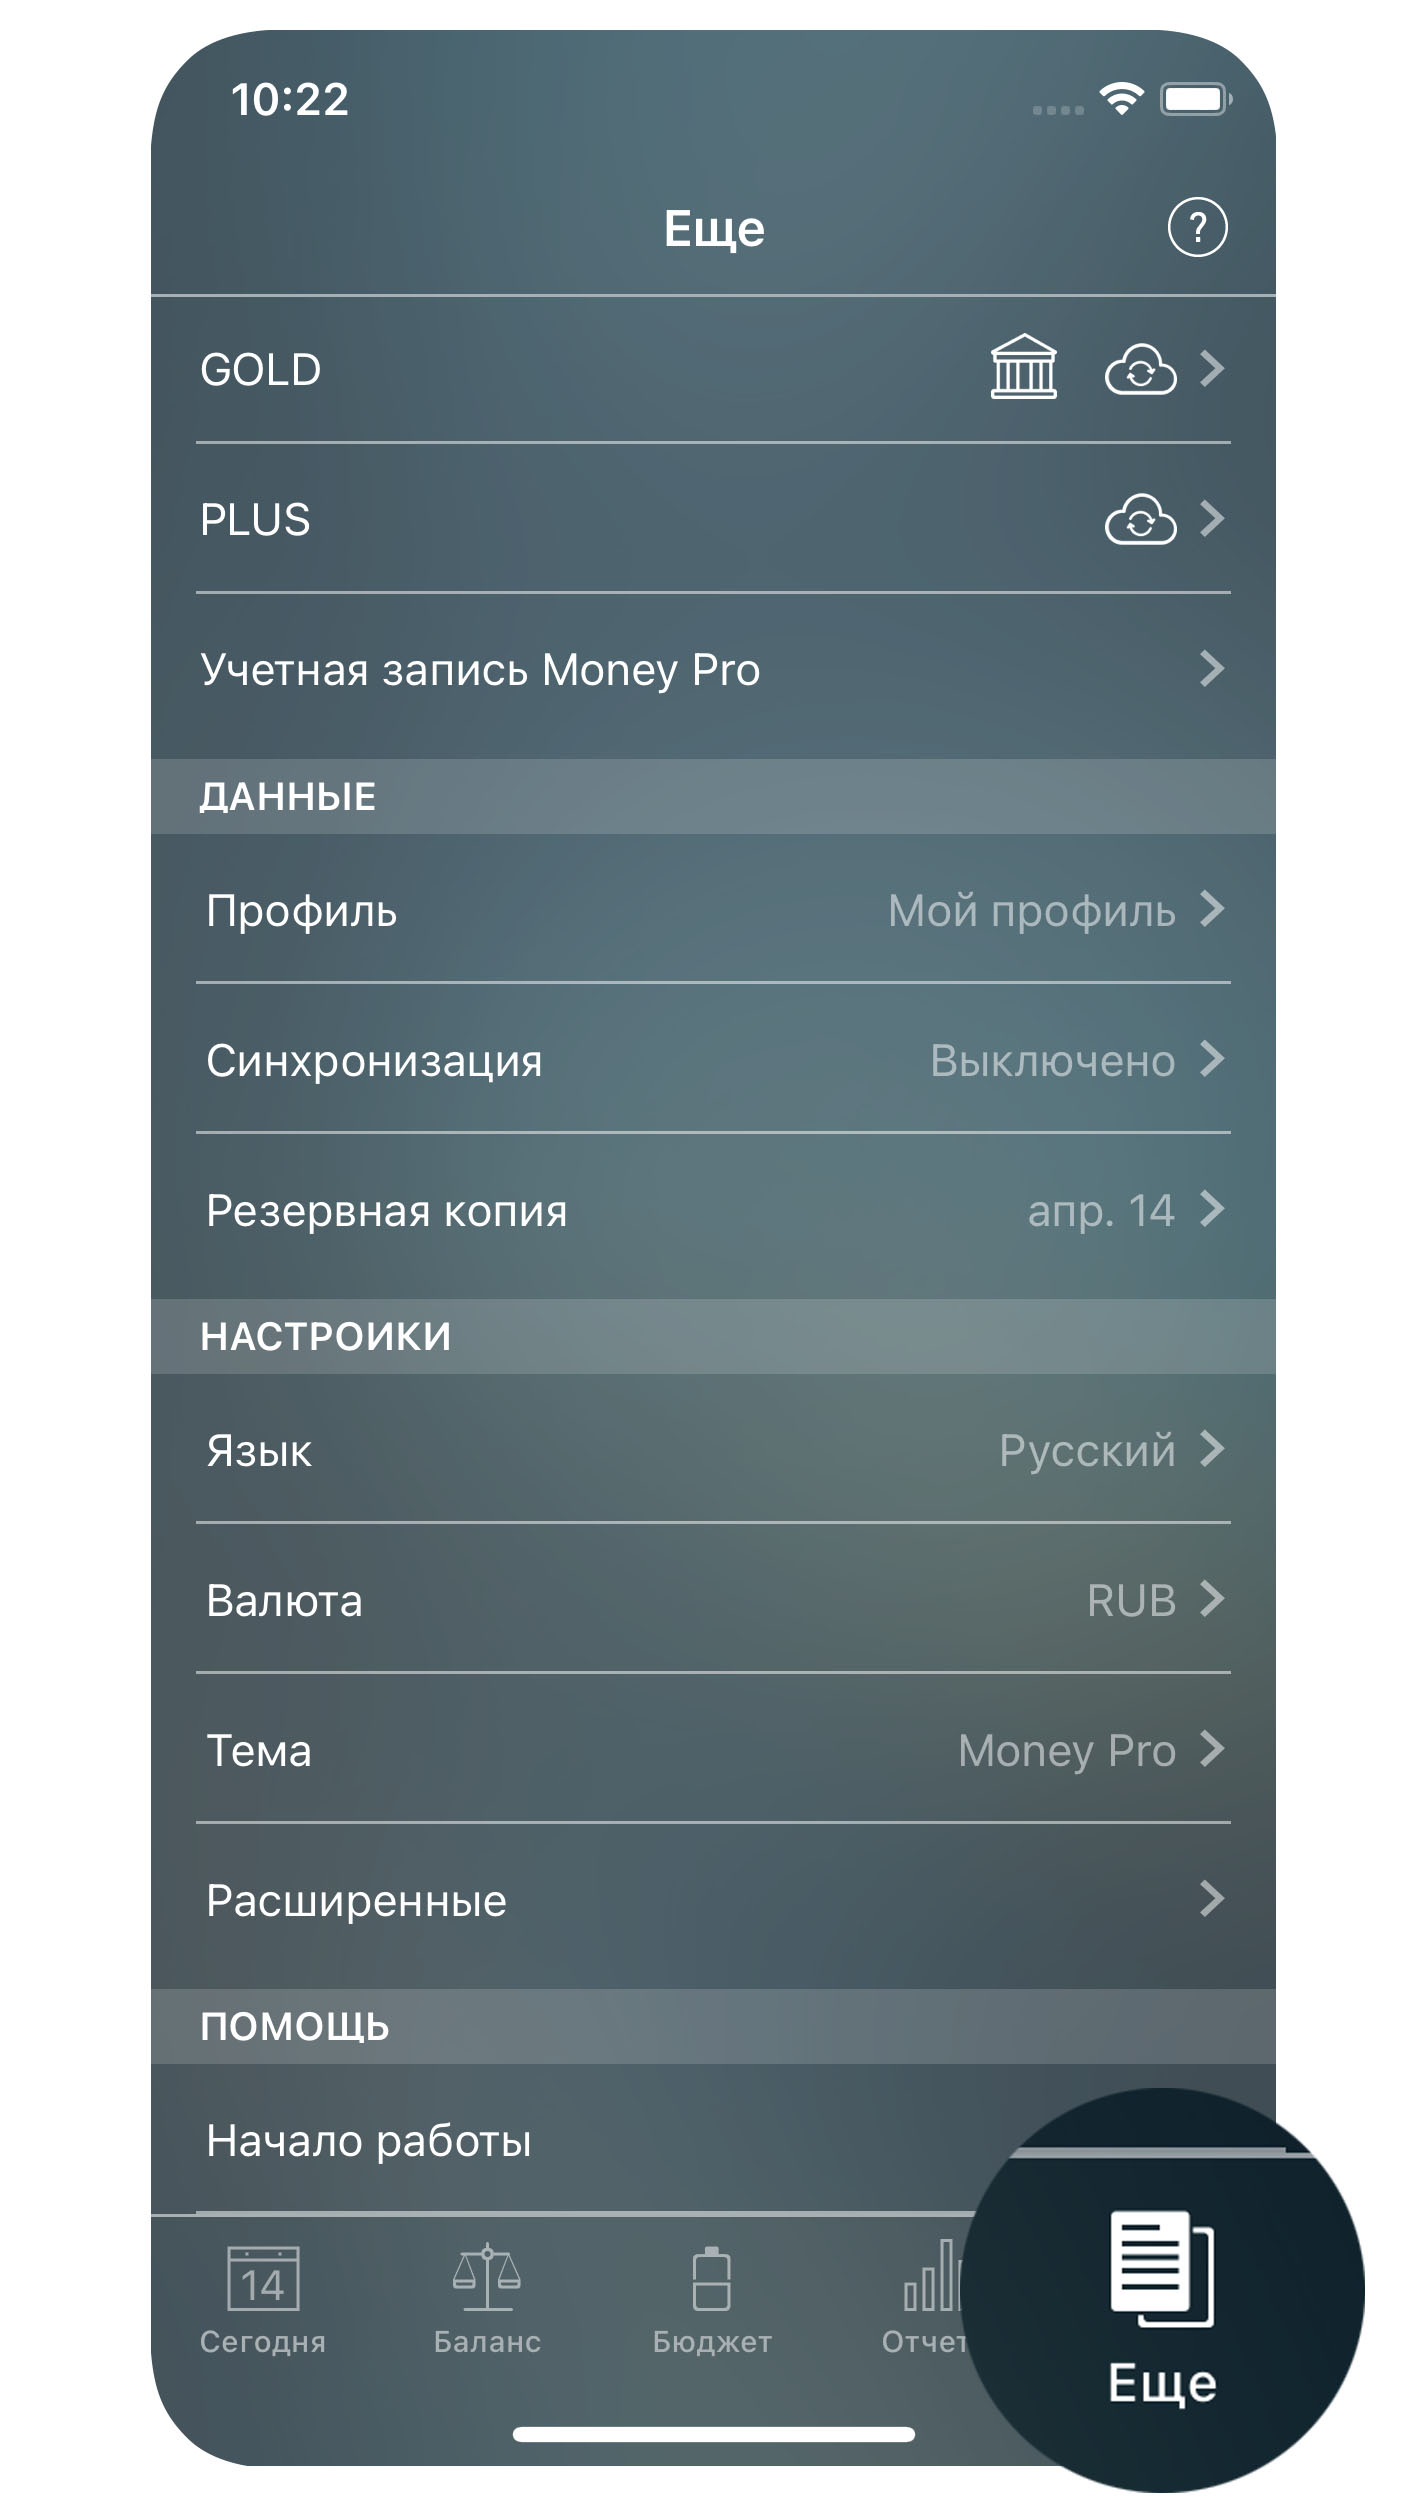 Money Pro - Ещё (резервная копия, профили, синхронизация) - iPhone